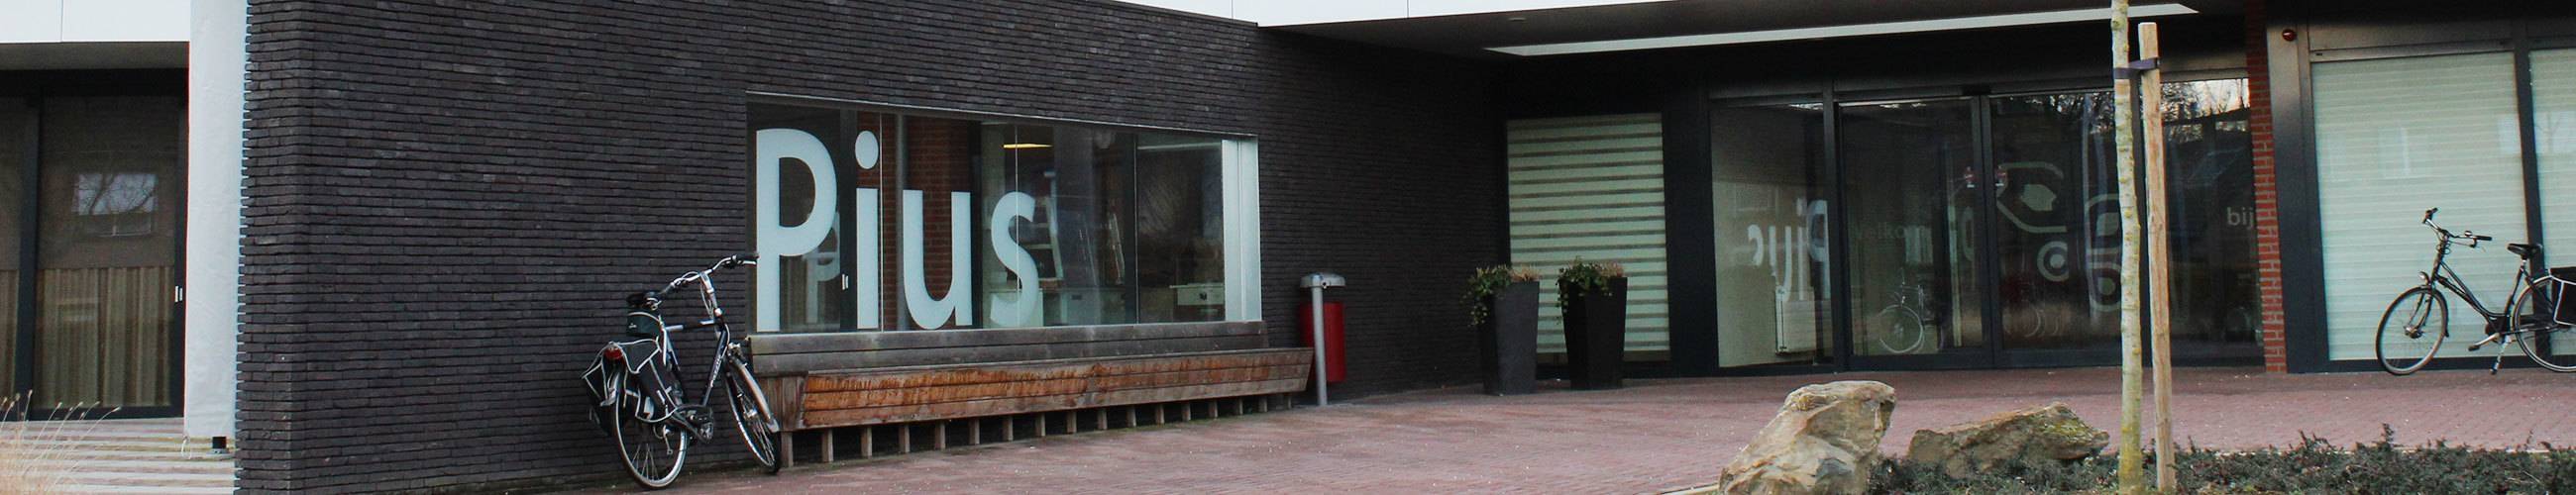 Zorgcentrum Pius, Hoensbroek